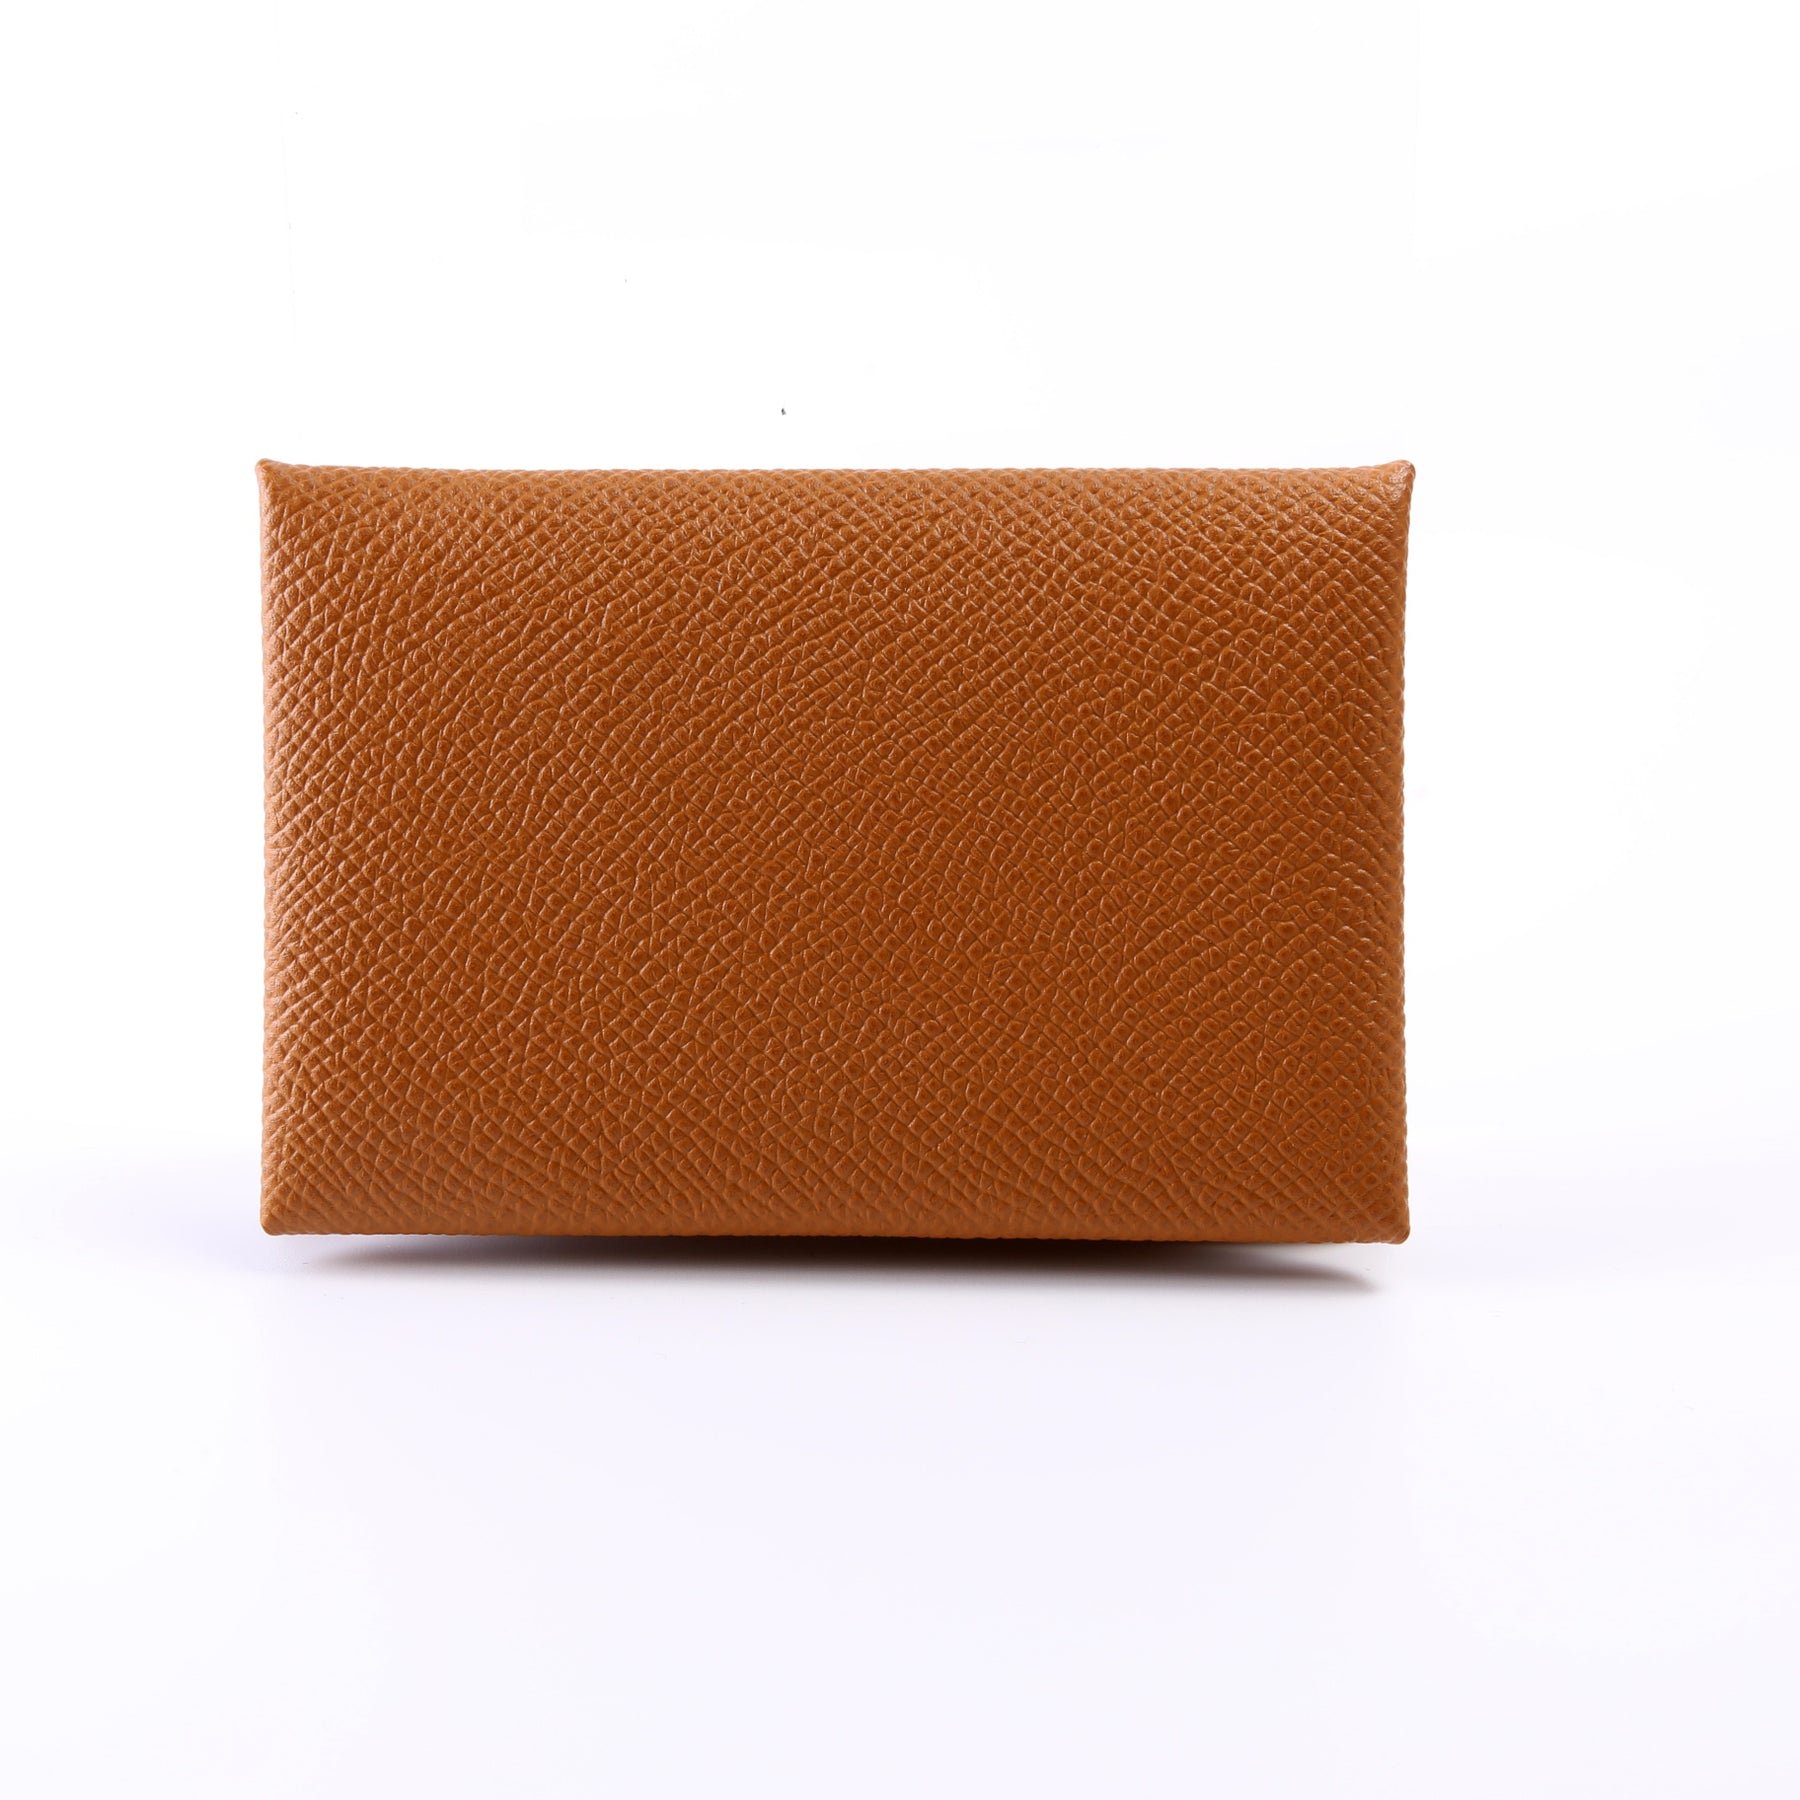 Hermes Gold Epsom Leather Calvi Card Holder